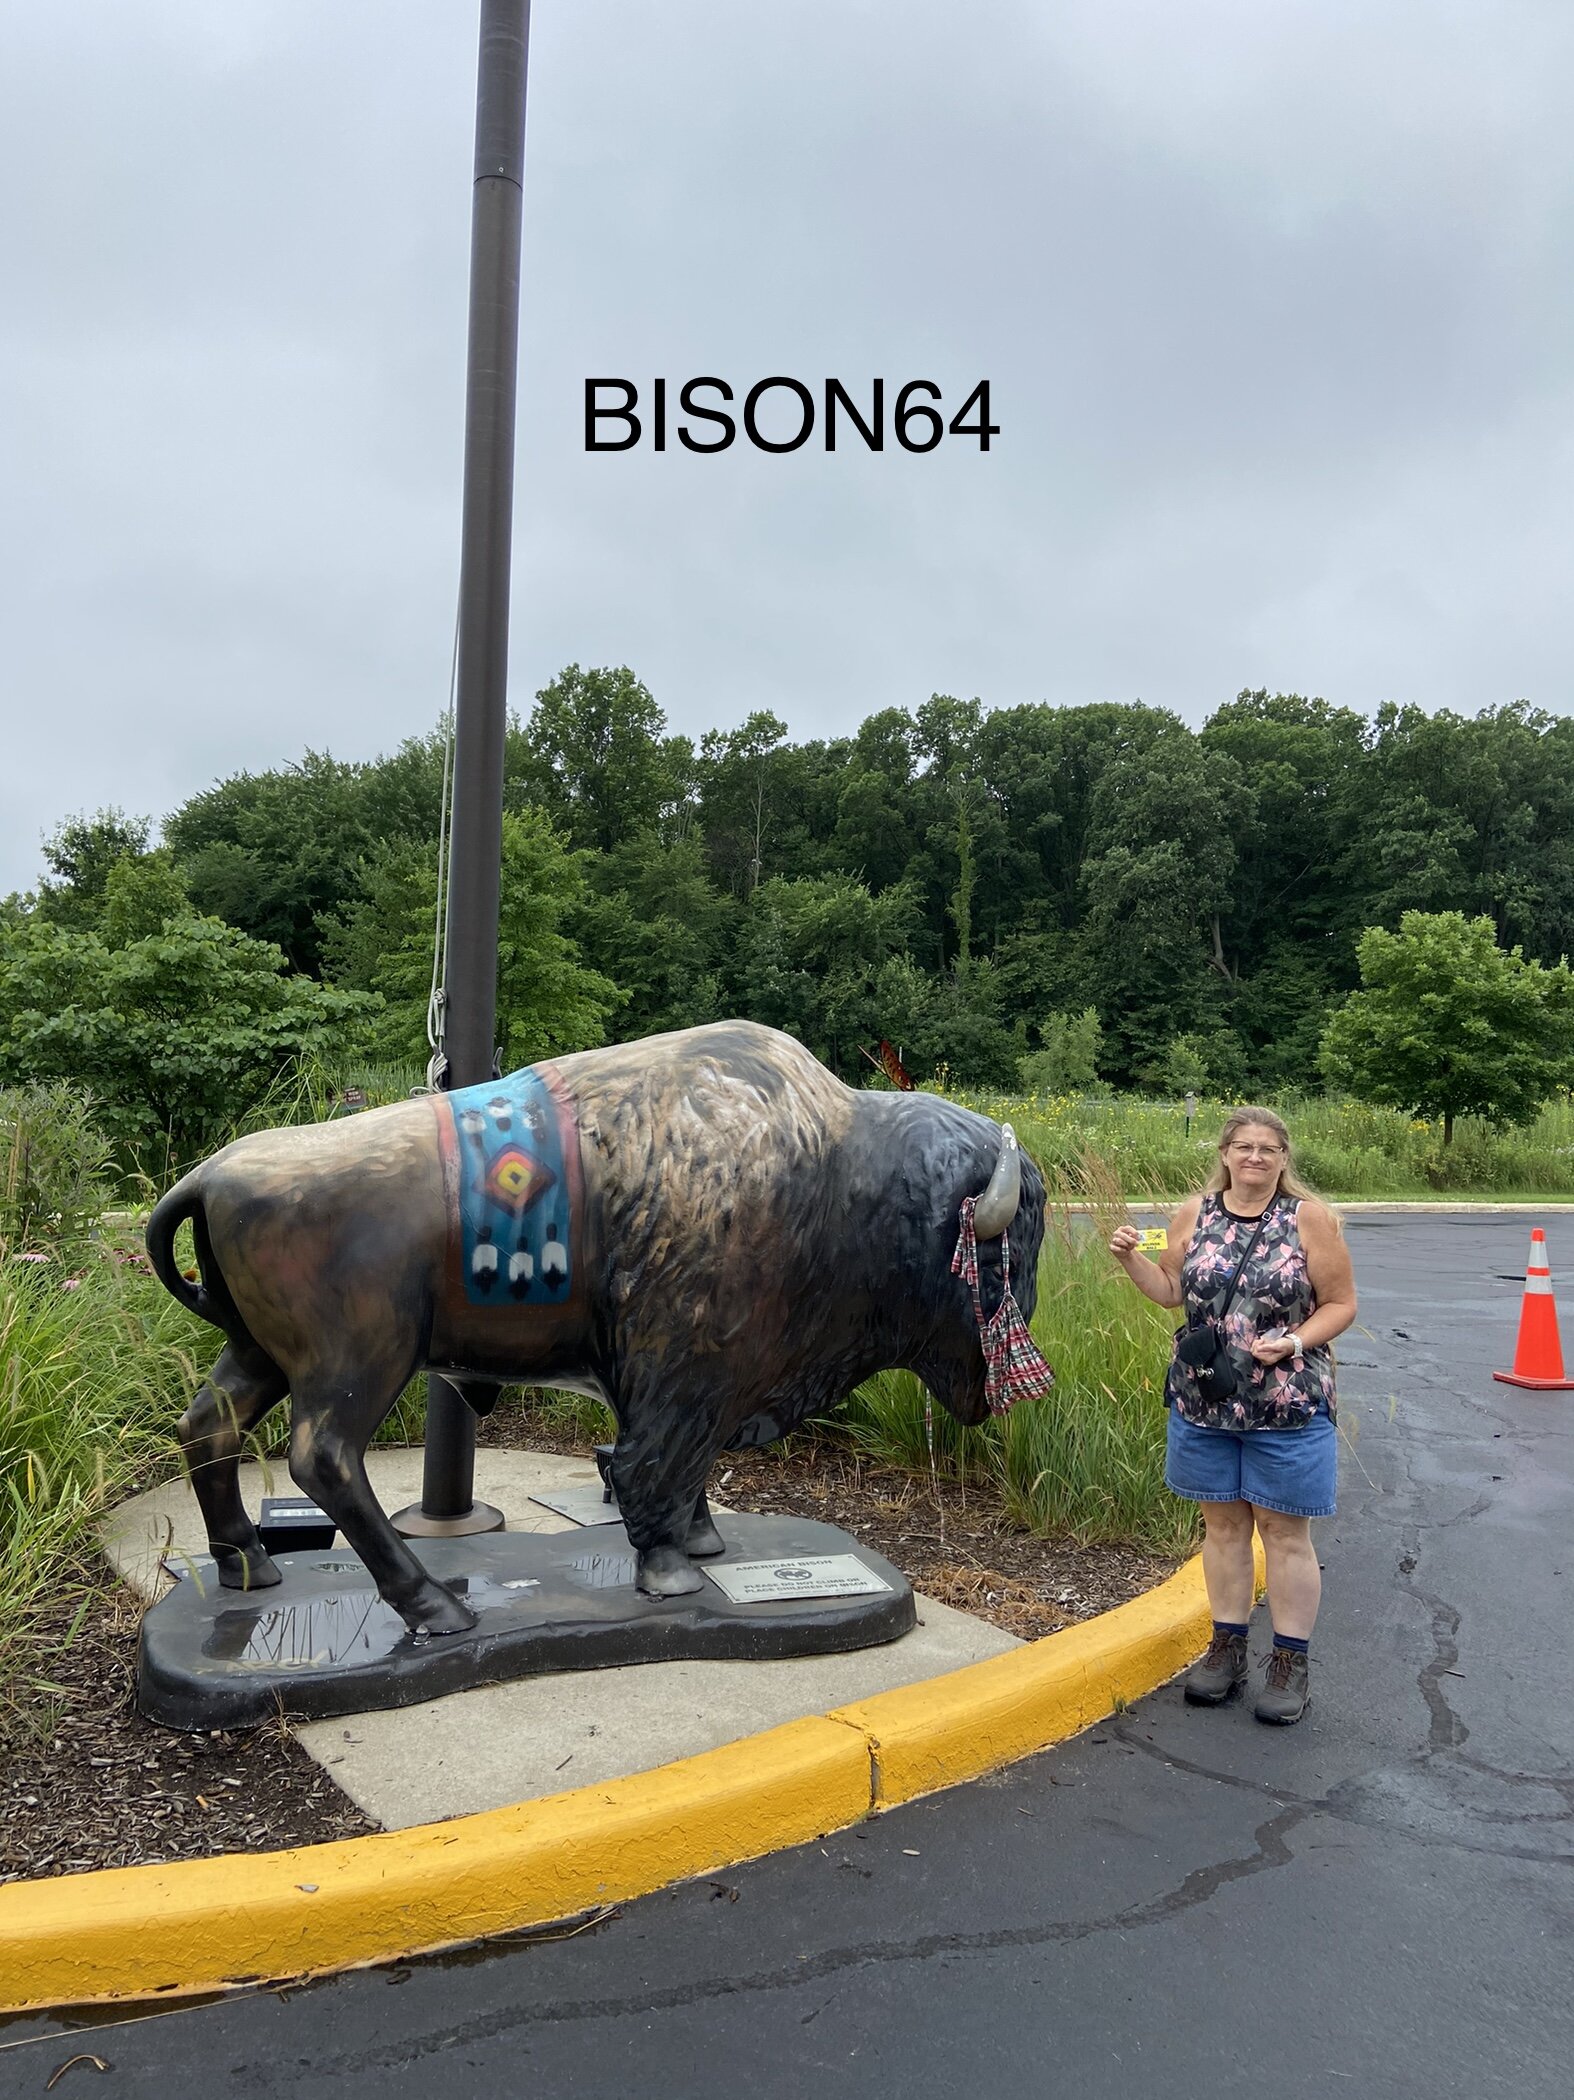 bison64b.jpg